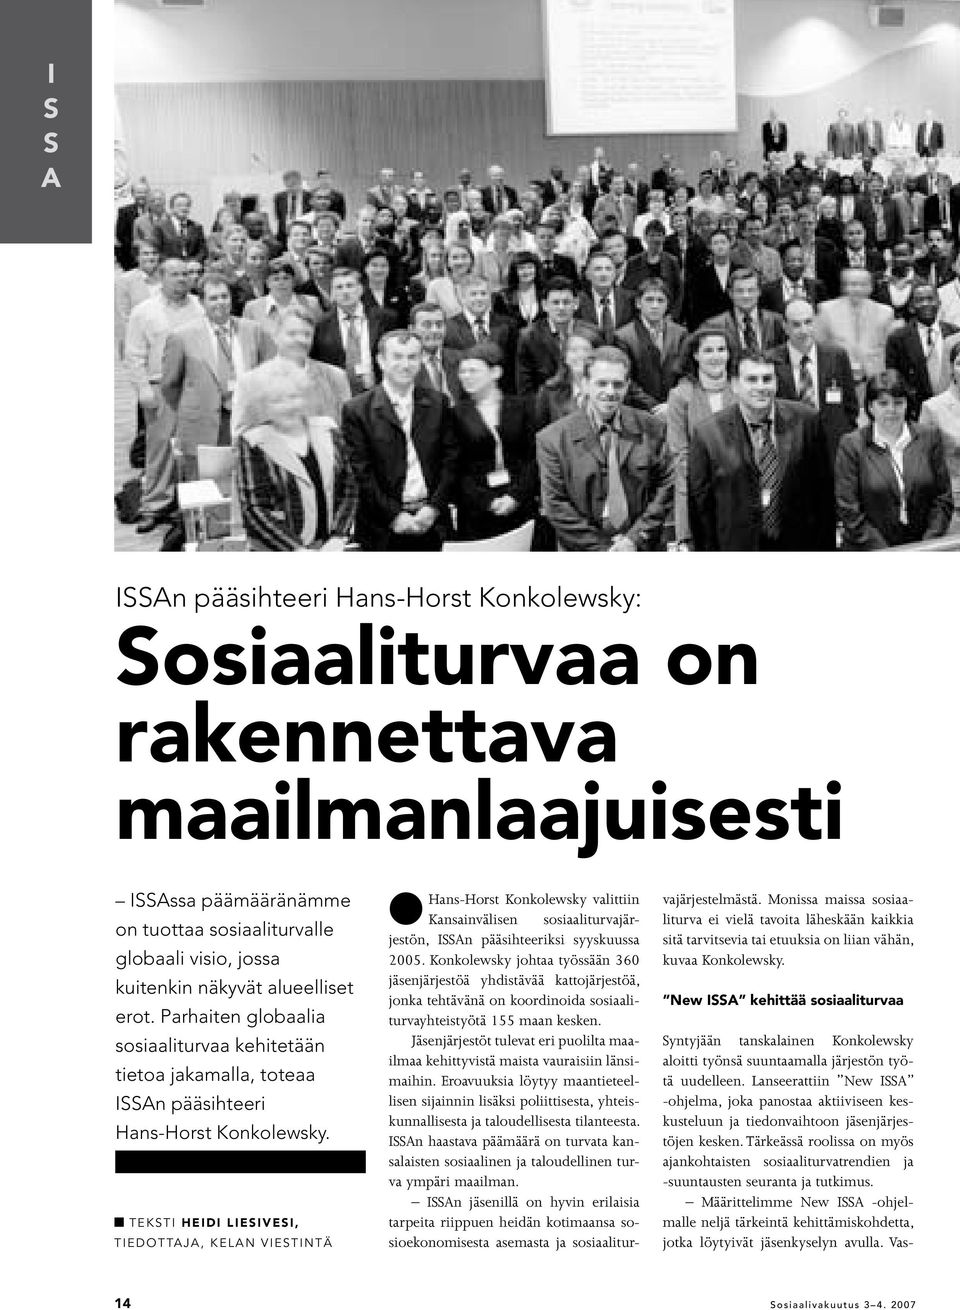 n TEKSTI heidi liesivesi, Tiedottaja, KELAN VIESTINTÄ lhans-horst Konkolewsky valittiin Kansainvälisen sosiaaliturvajärjestön, ISSAn pääsihteeriksi syyskuussa 2005.